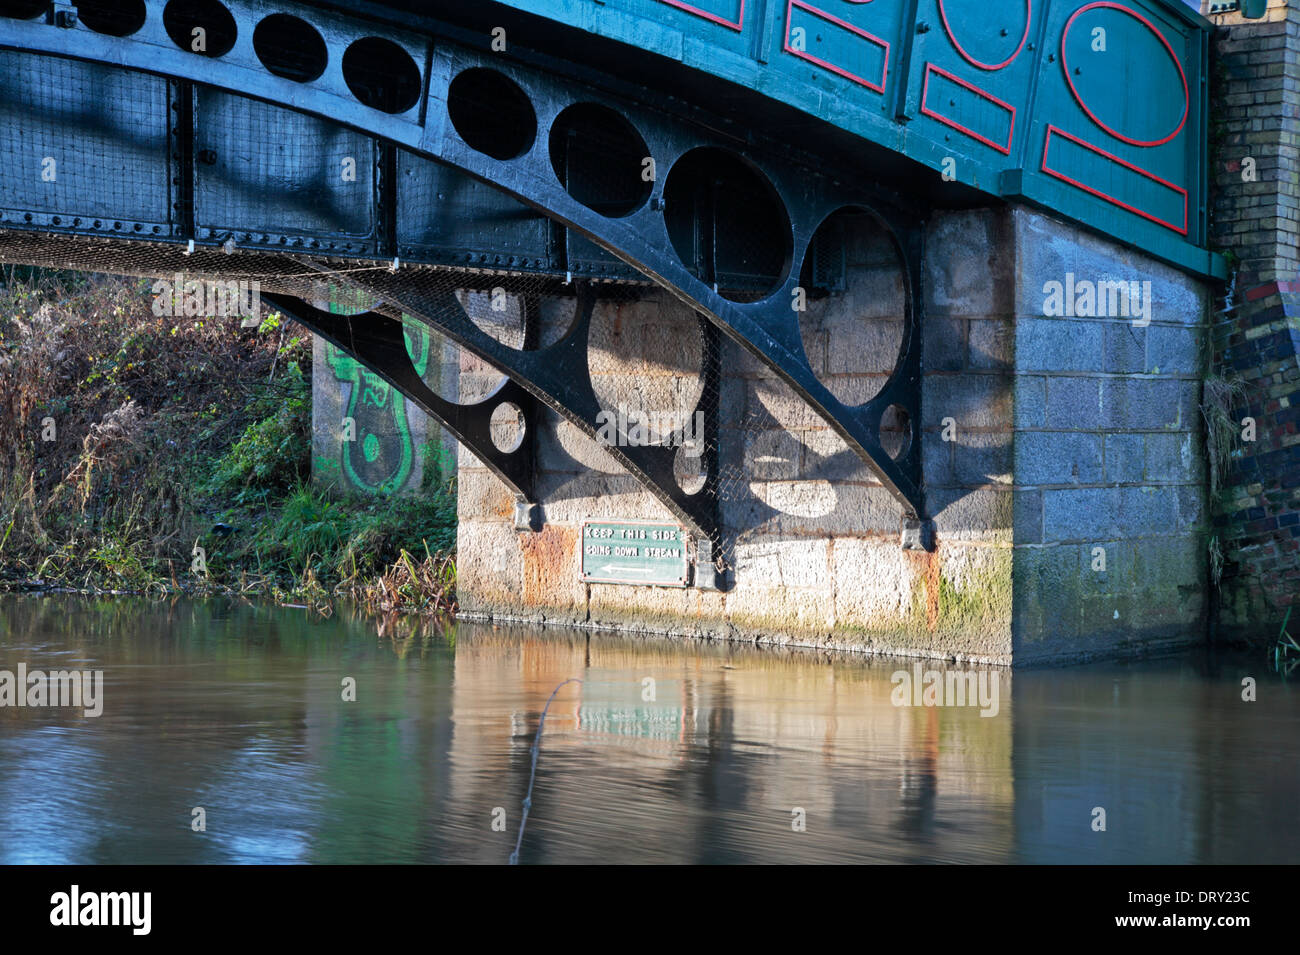 Détail de pont routier sur la rivière Wensum à Hellesdon, Norfolk, Angleterre, Royaume-Uni. Banque D'Images